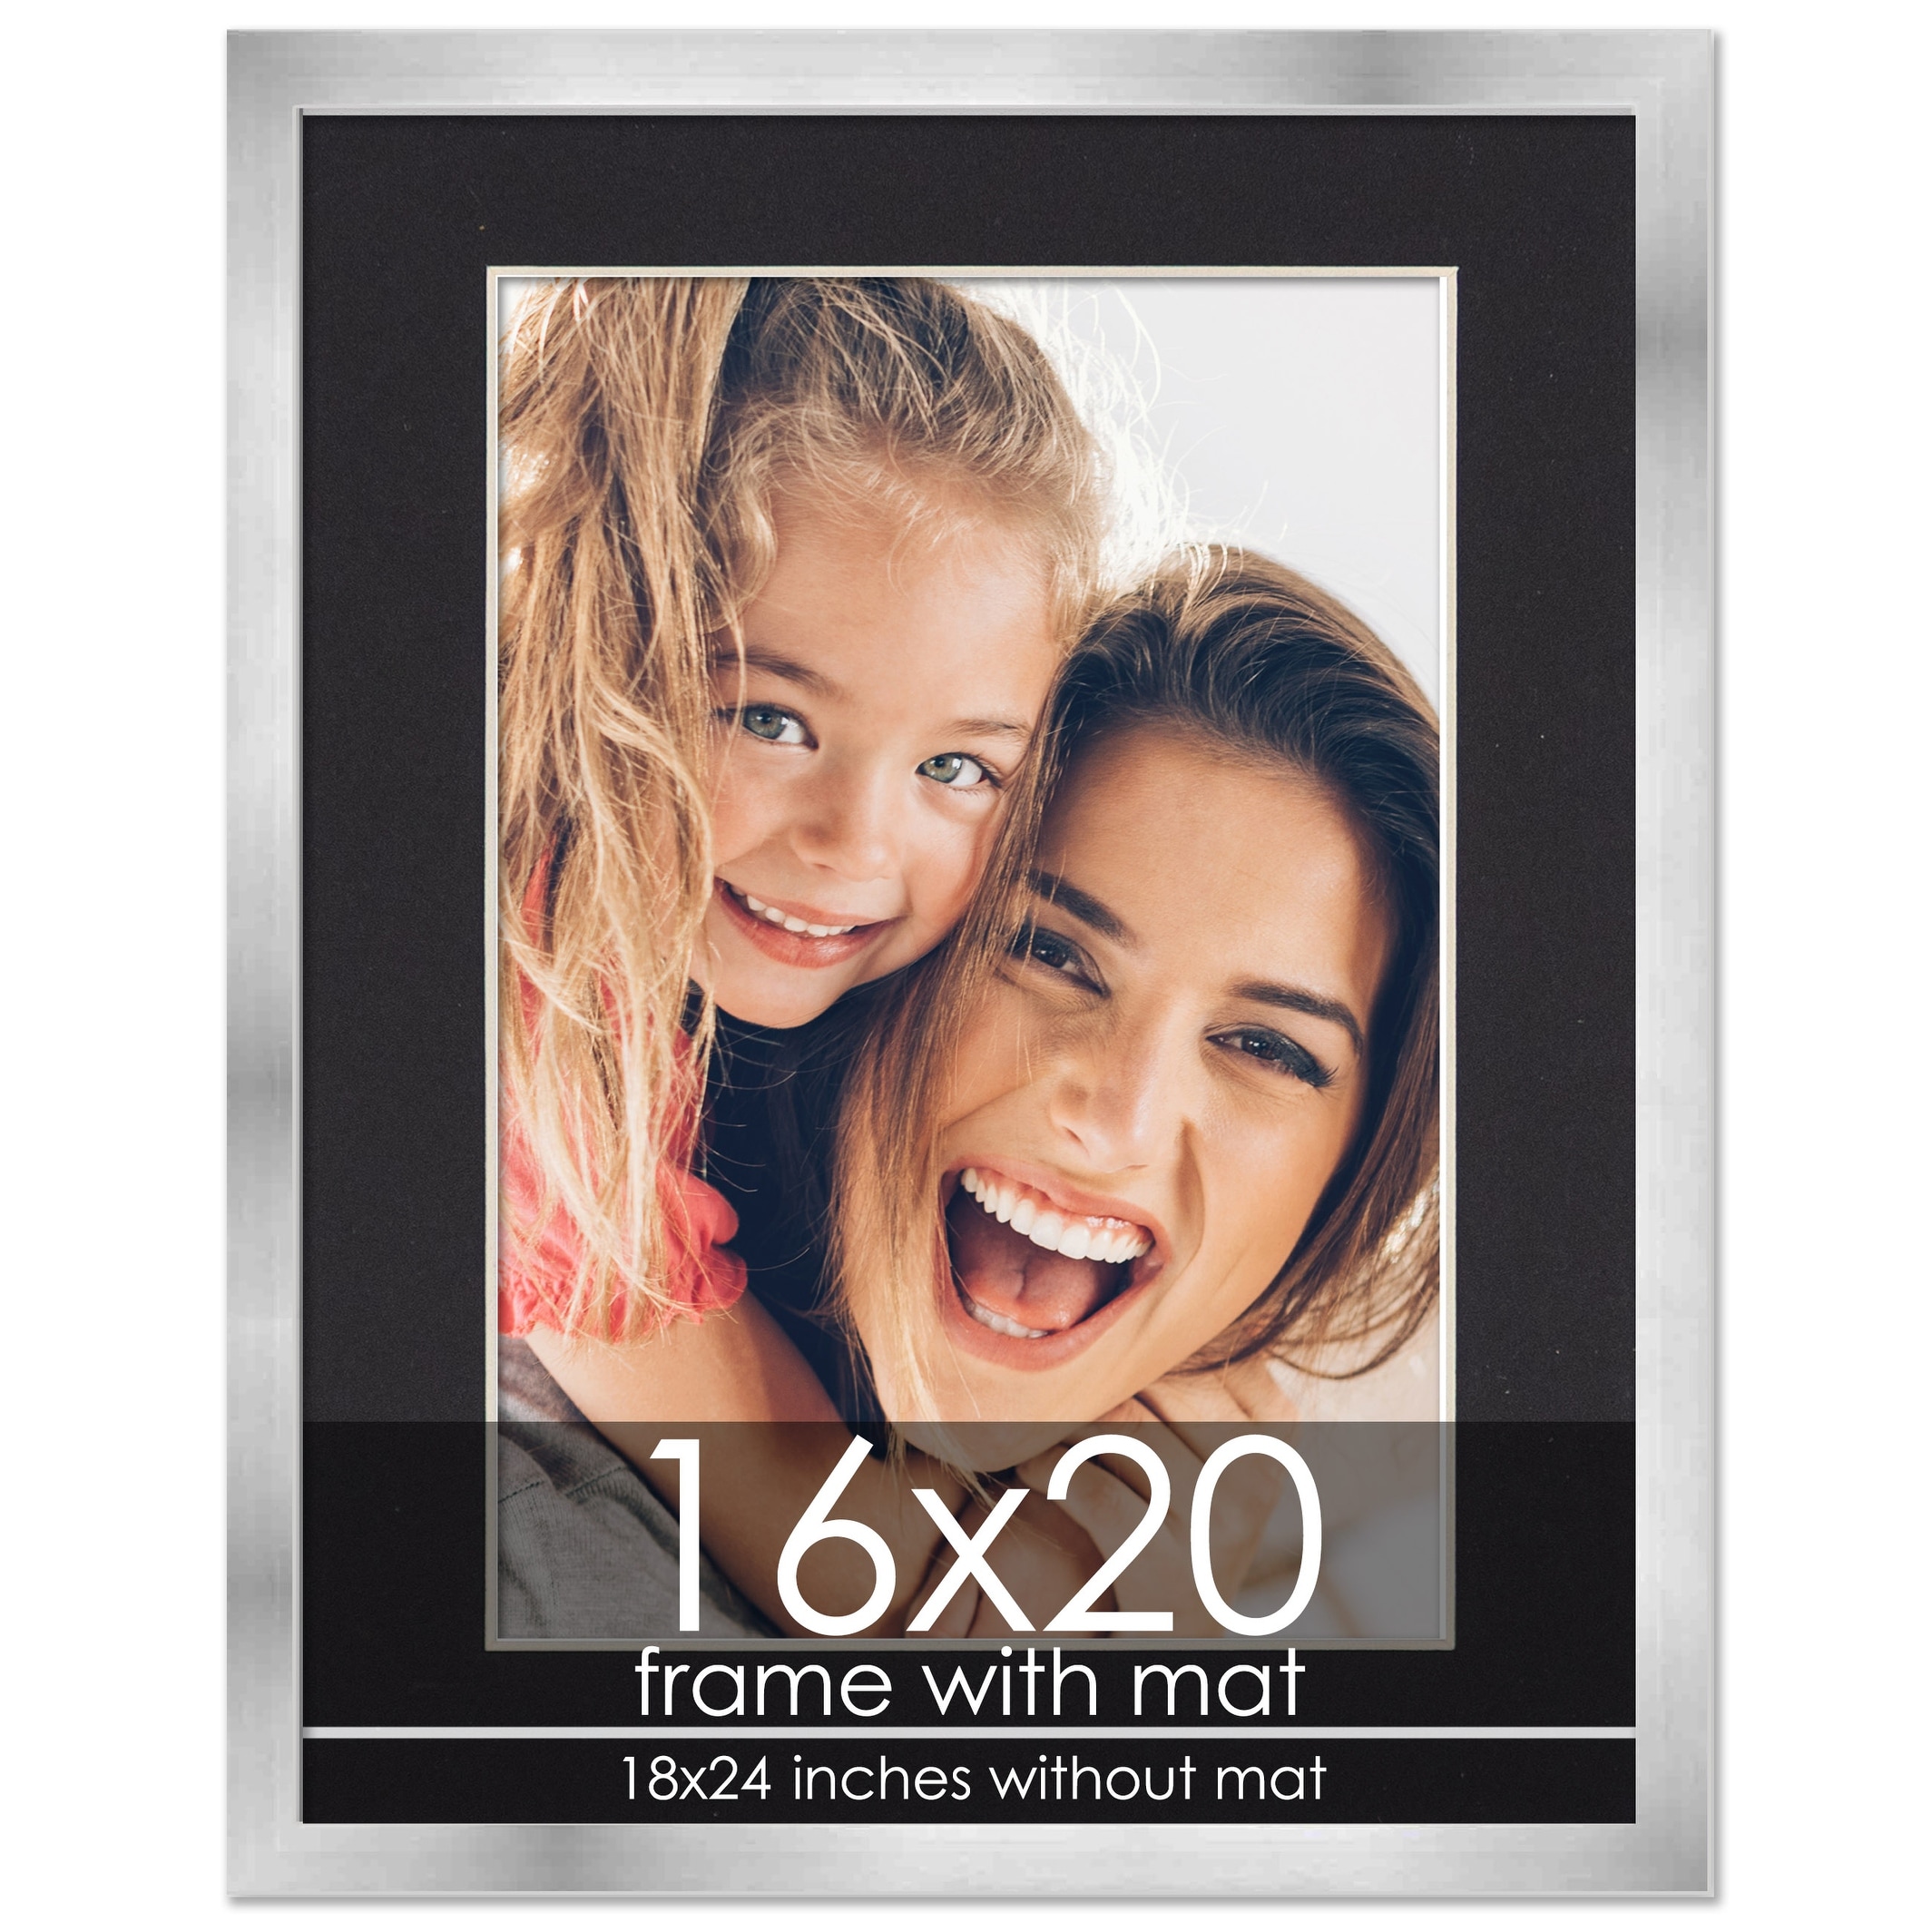 16x20 Frame With 11x14 Mat open 11 x 14 Photo 16 x 20 Frames